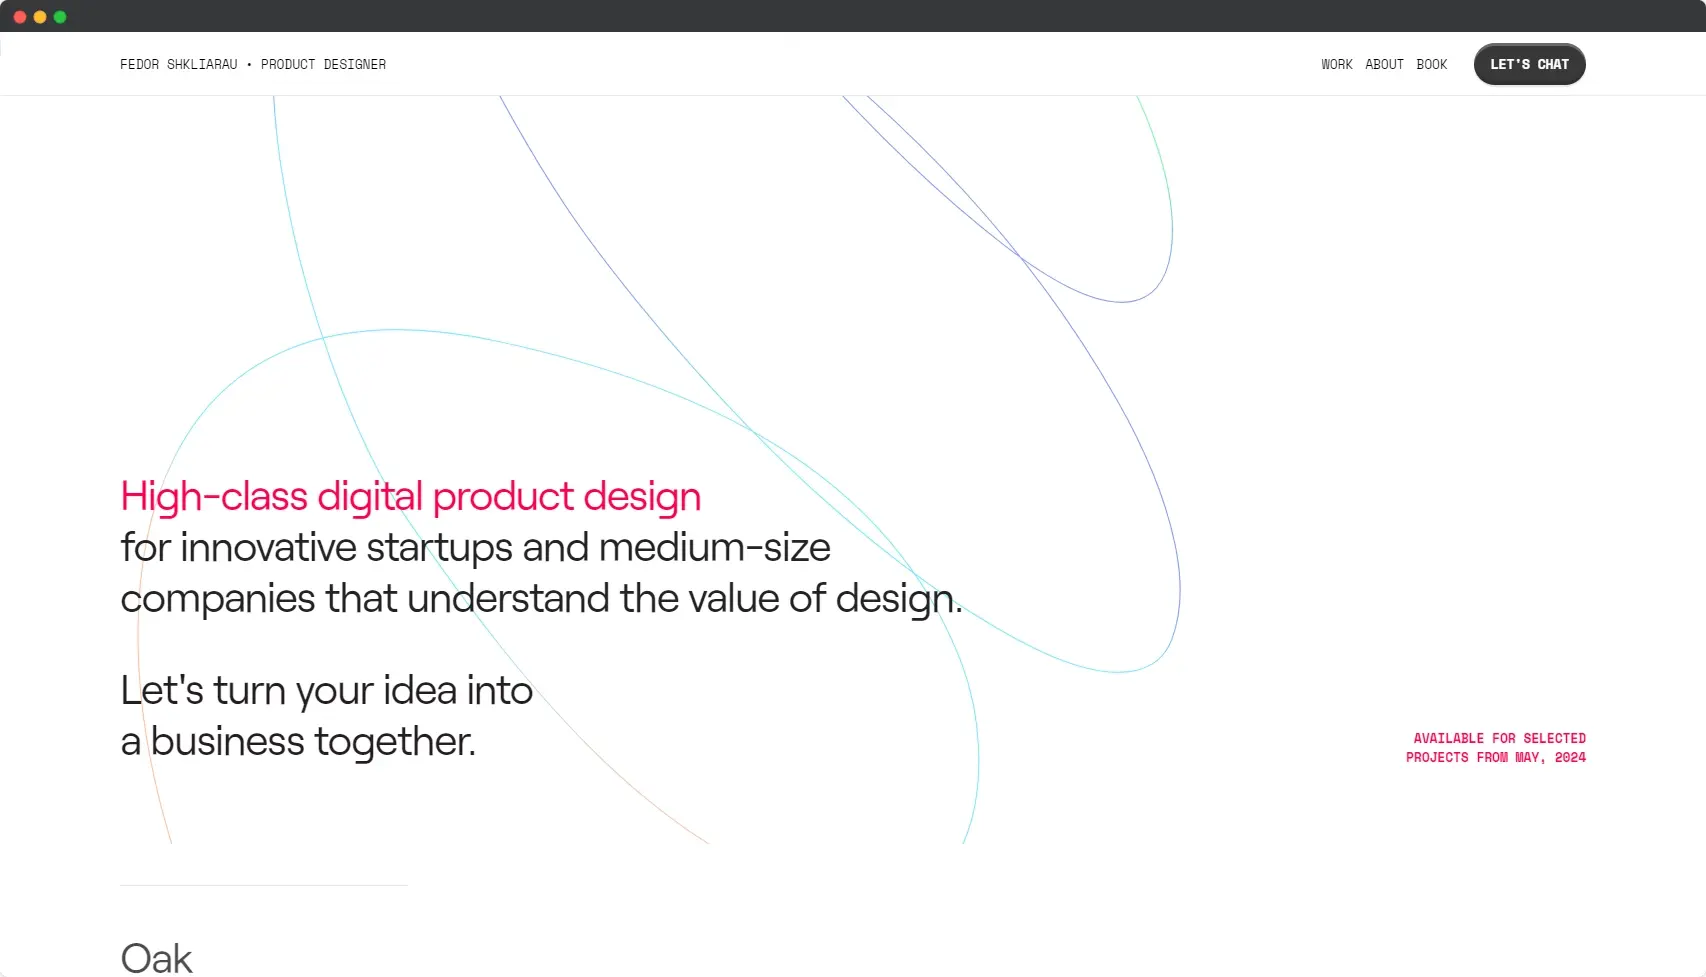 Blogduwebdesign inspiration web portfolio product designer fedor shkliarau